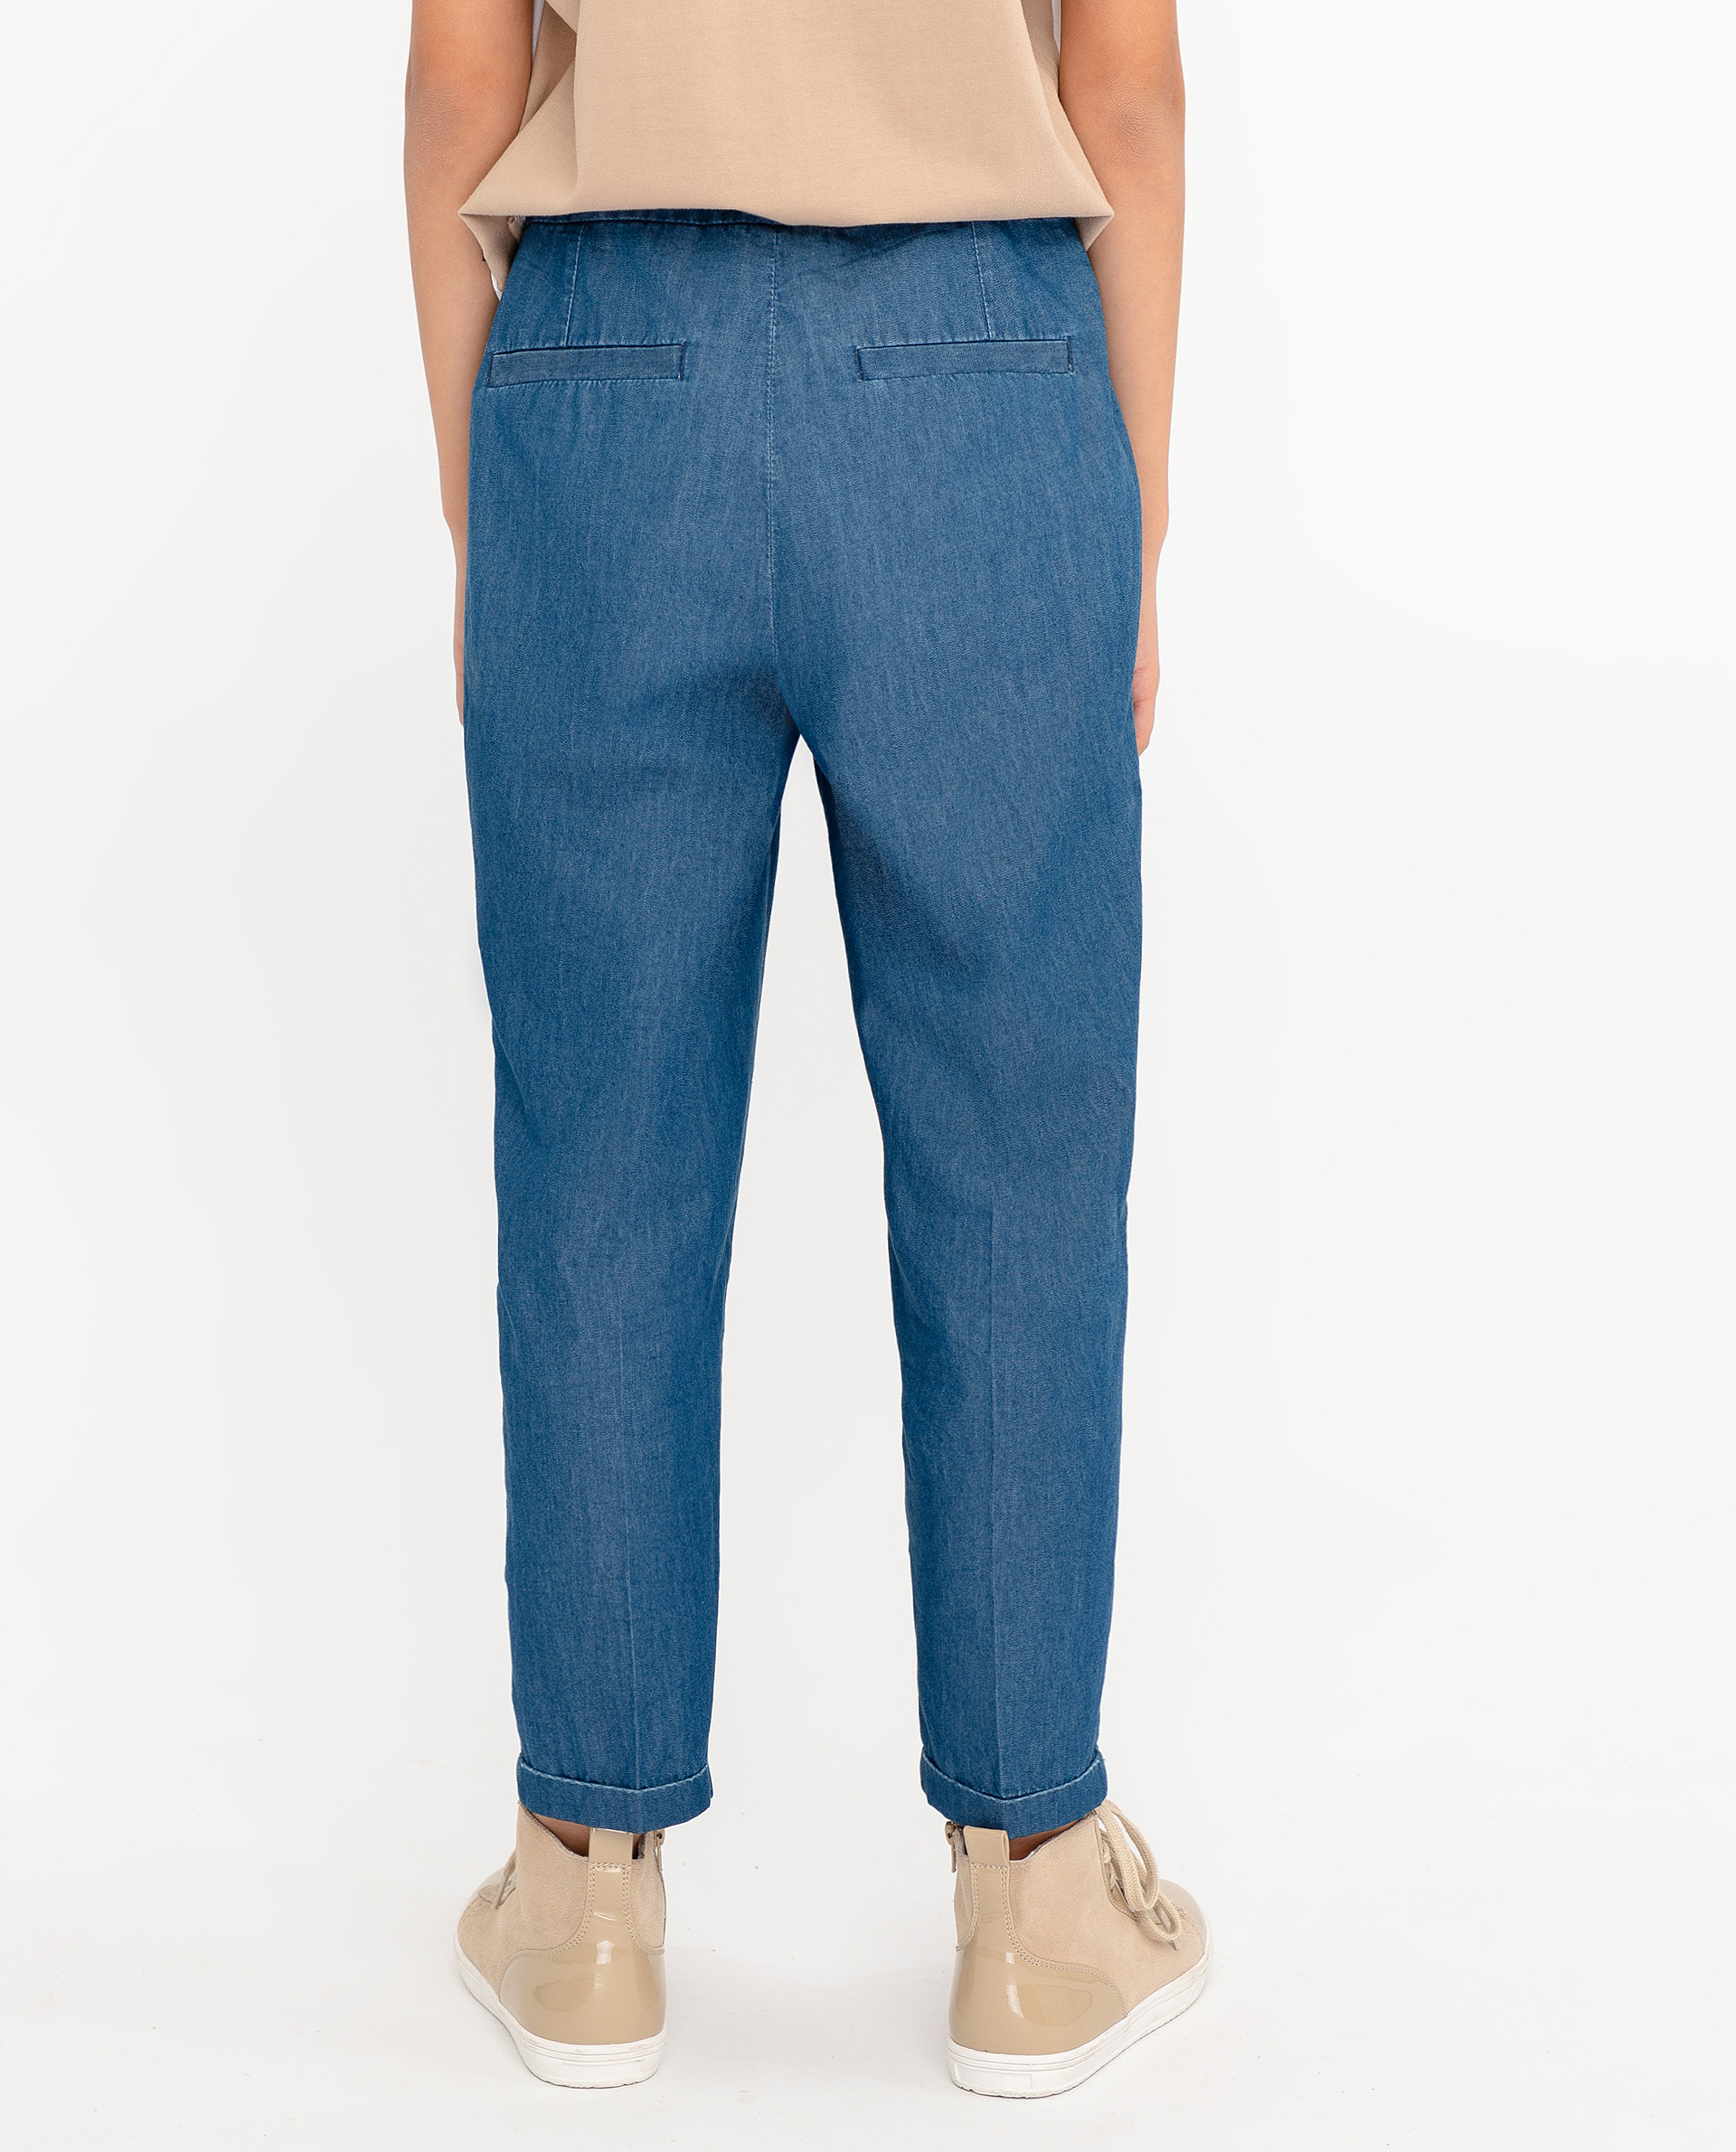 Брюки из джинсовой ткани Gulliver 12008GJC6308, размер 164, цвет голубой - фото 5